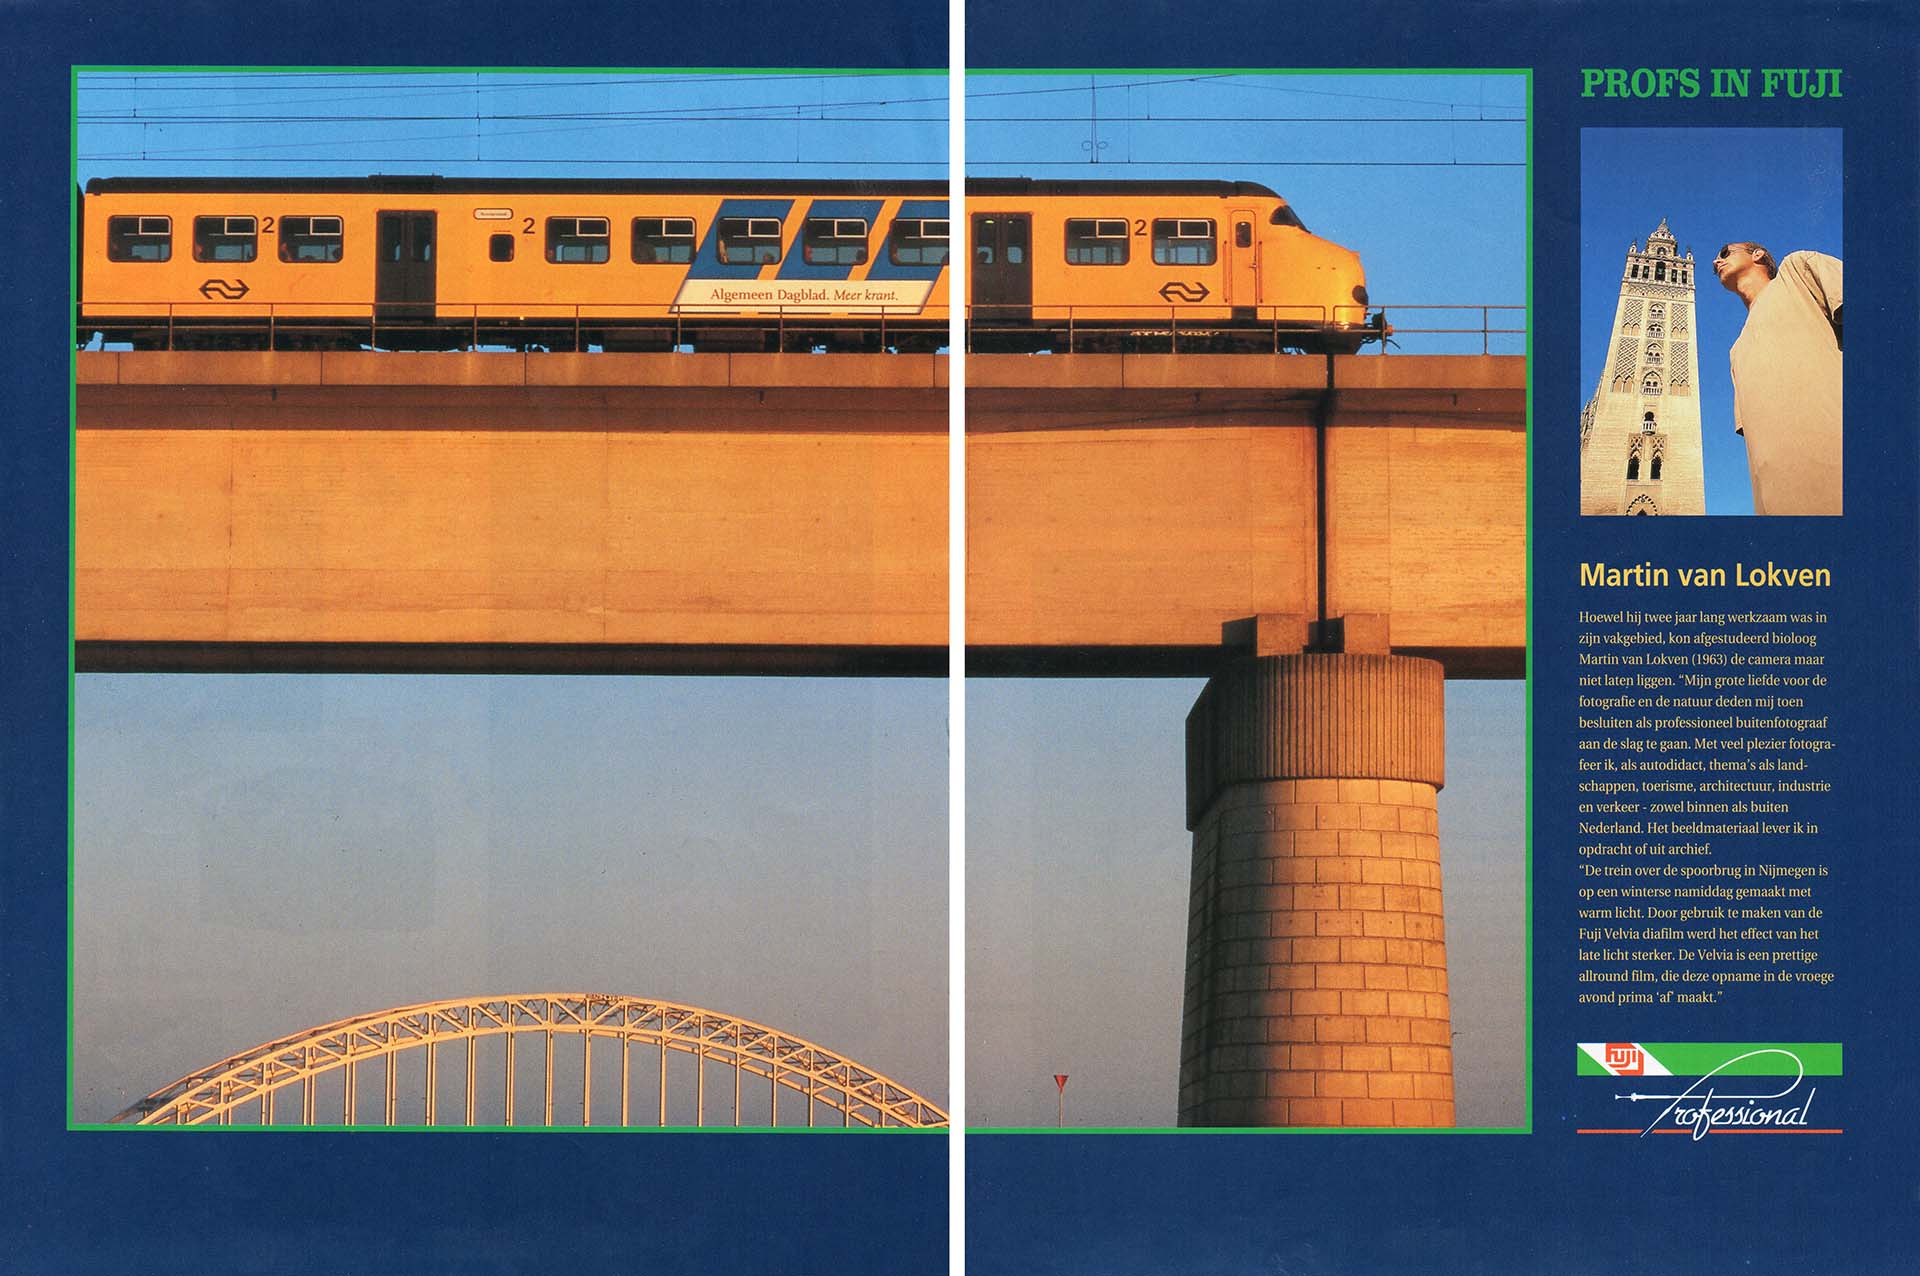 Publicatie van een foto met trein op een spoorweg in Focus magazine.